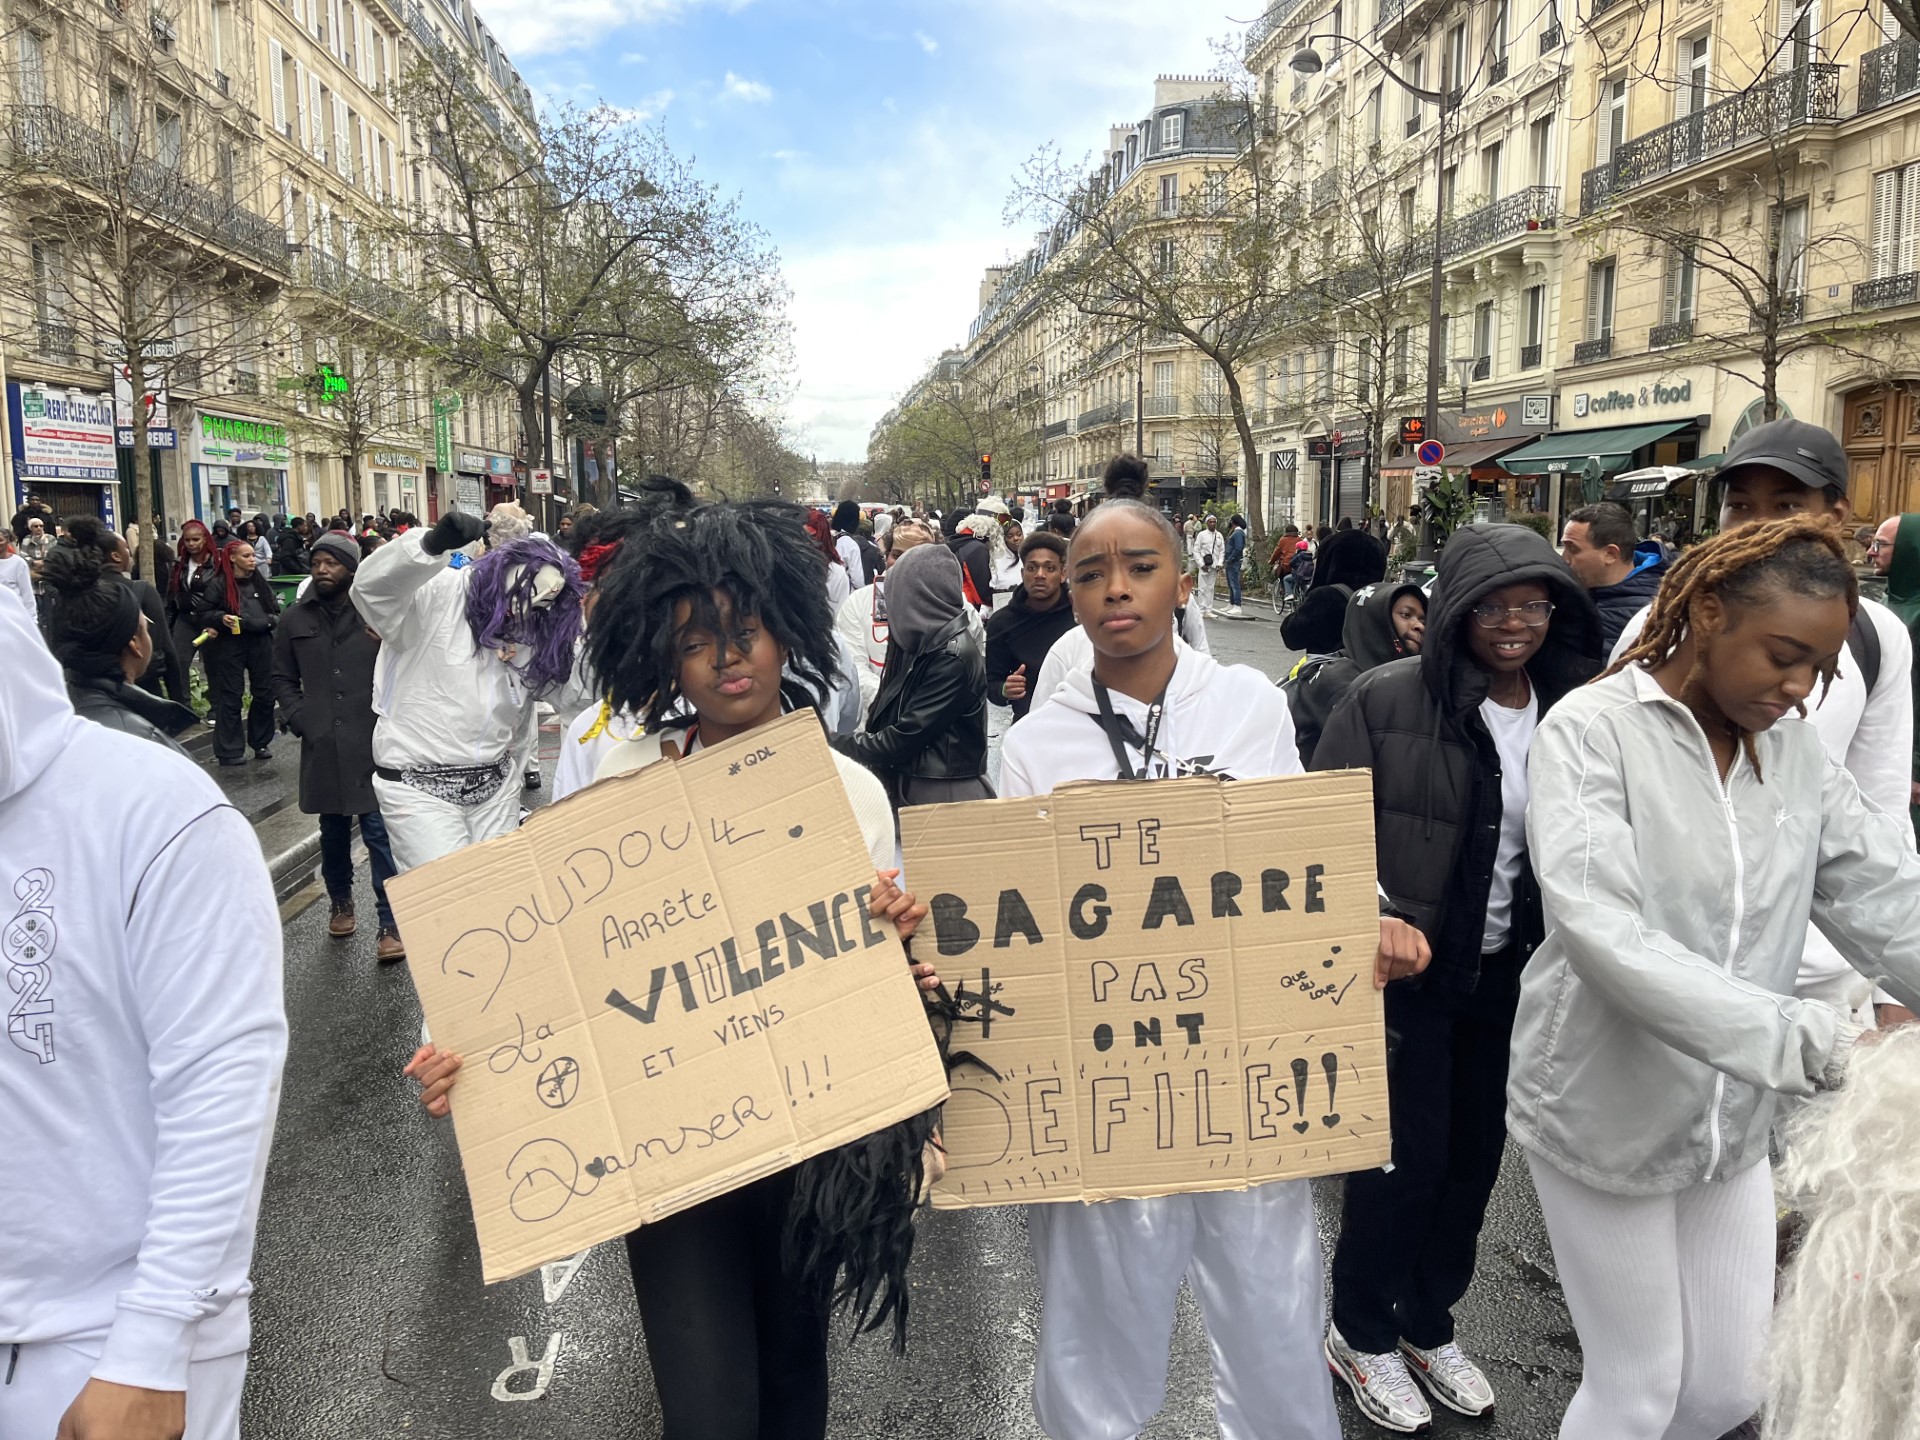     Paris : marche blanche contre la violence après l'agression de groupes de carnaval

